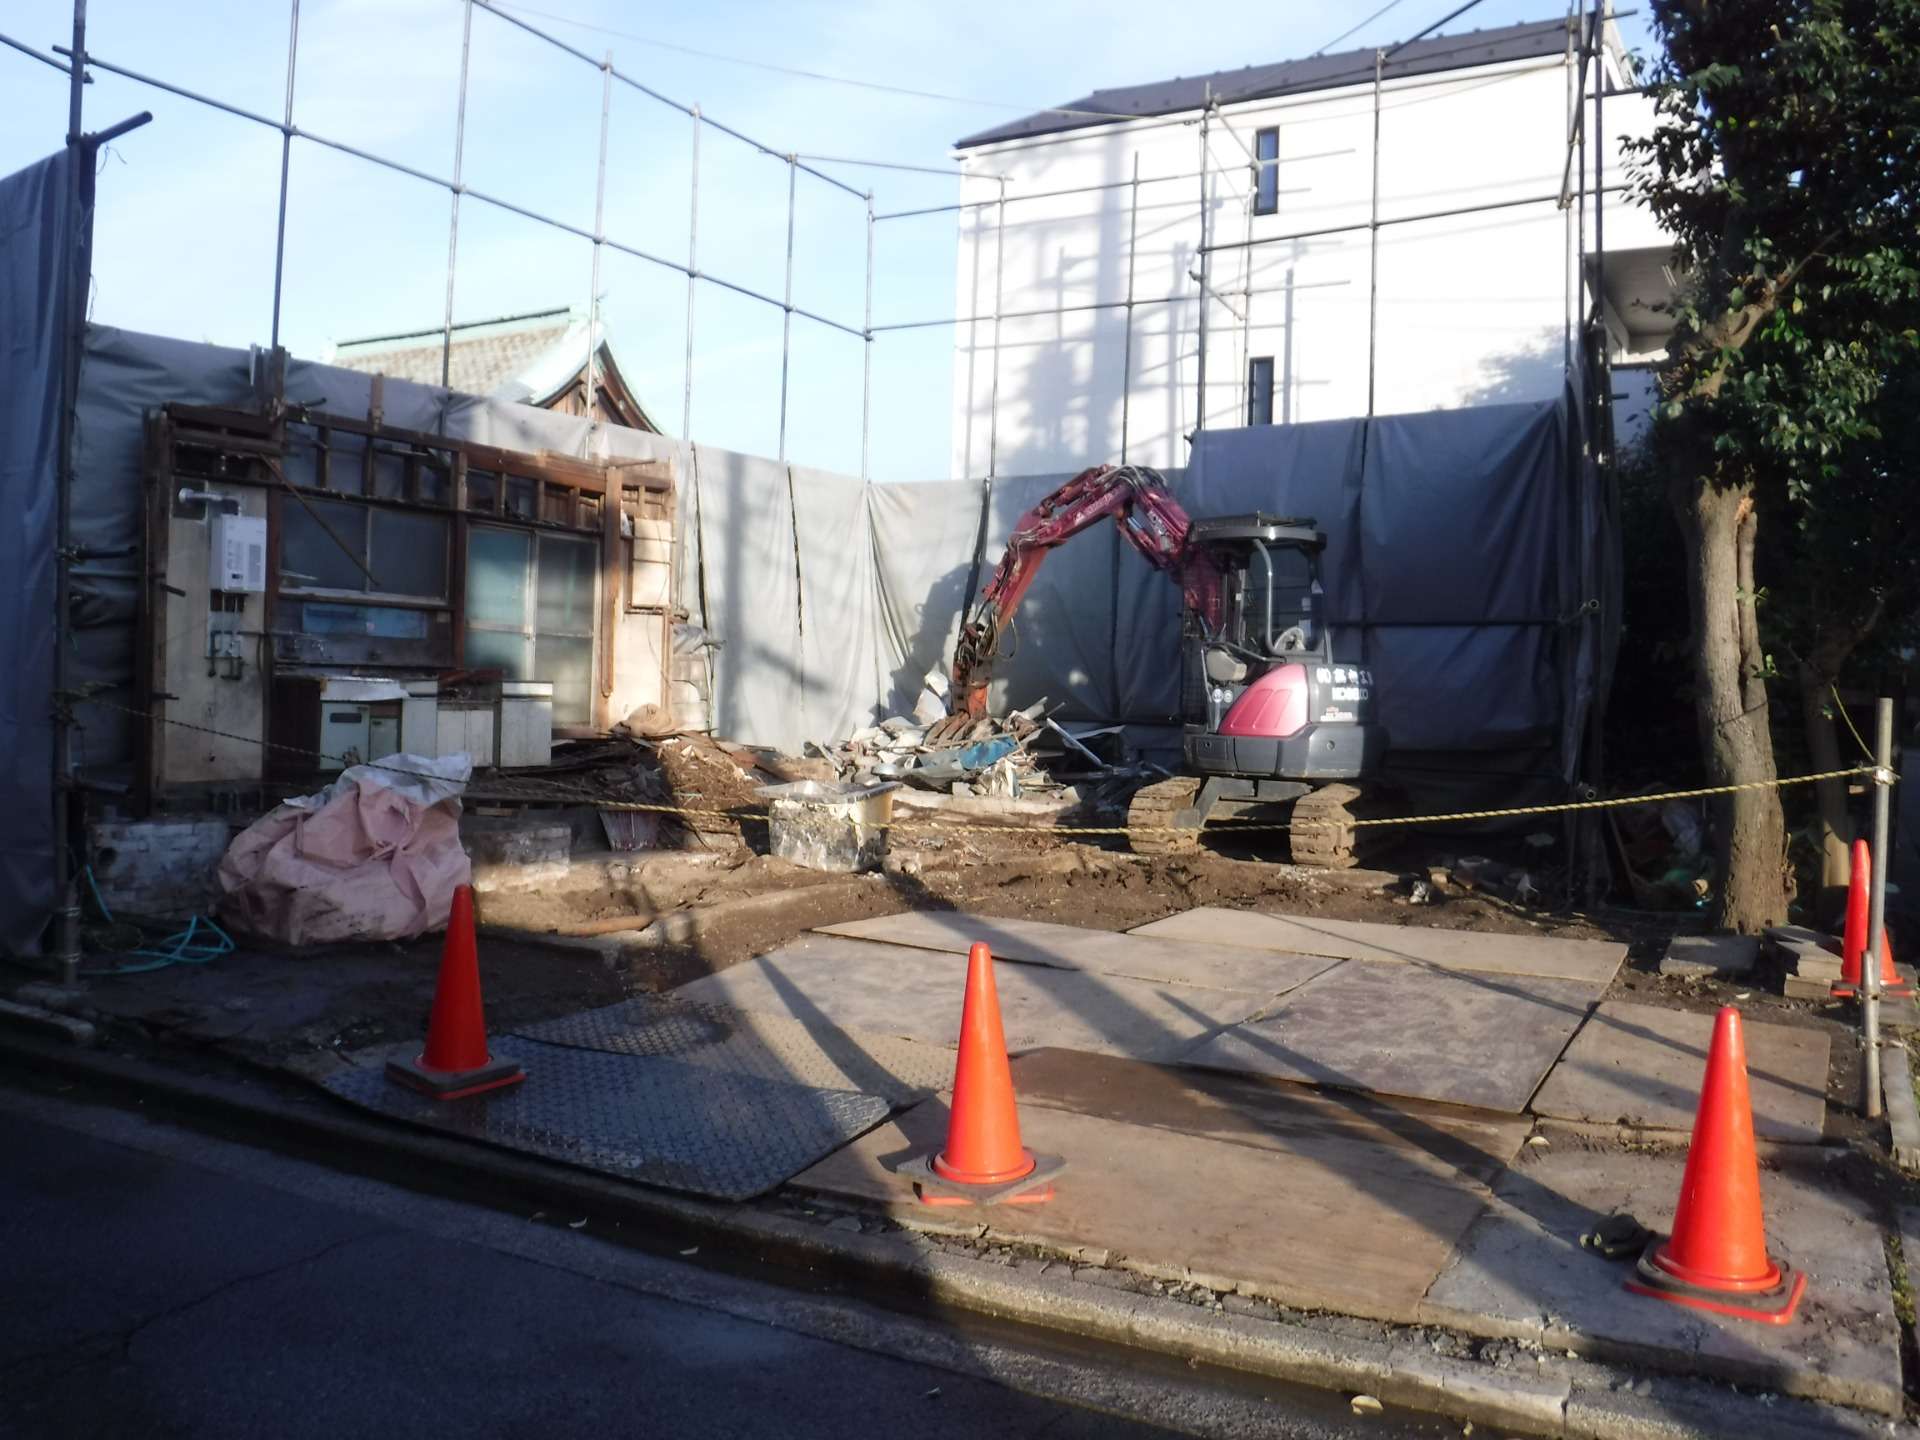 川崎市内で解体工事に携わってくださる方を対象に求人情報を掲載しています